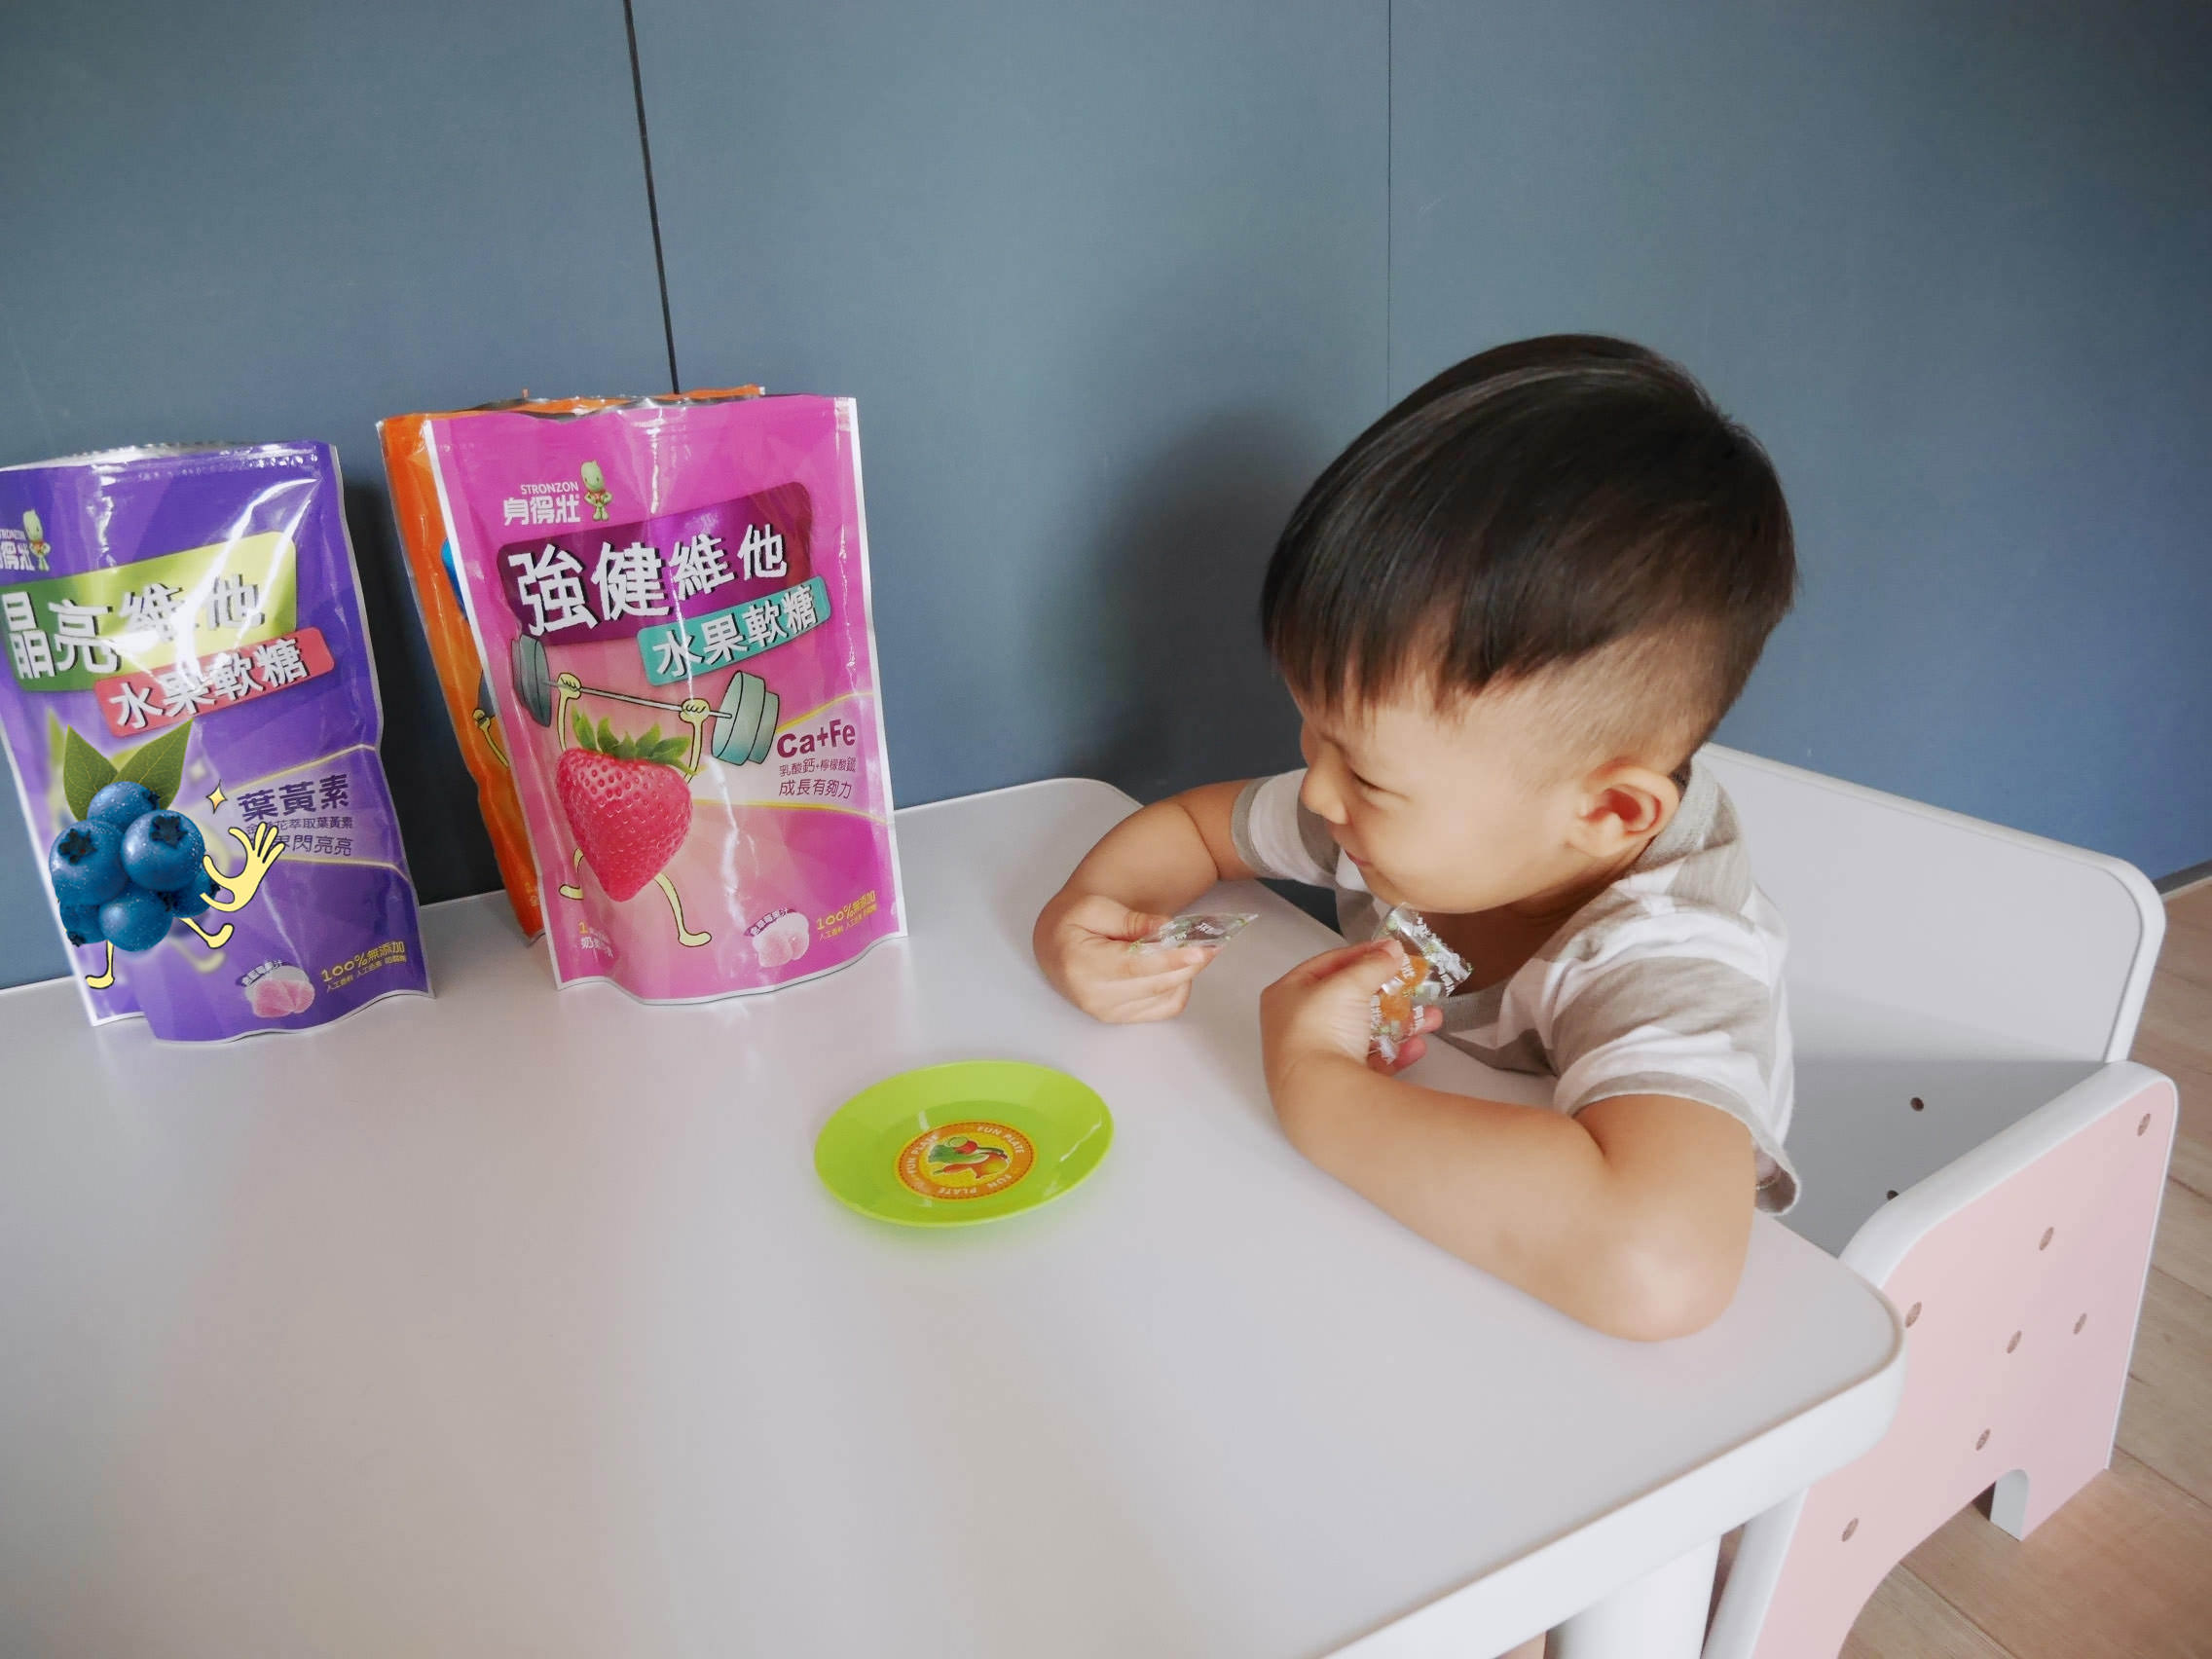 [副食品] 無人工香料/色素/防腐劑,讓一歲以上寶寶可以安心吃的身得壯維他水果軟糖